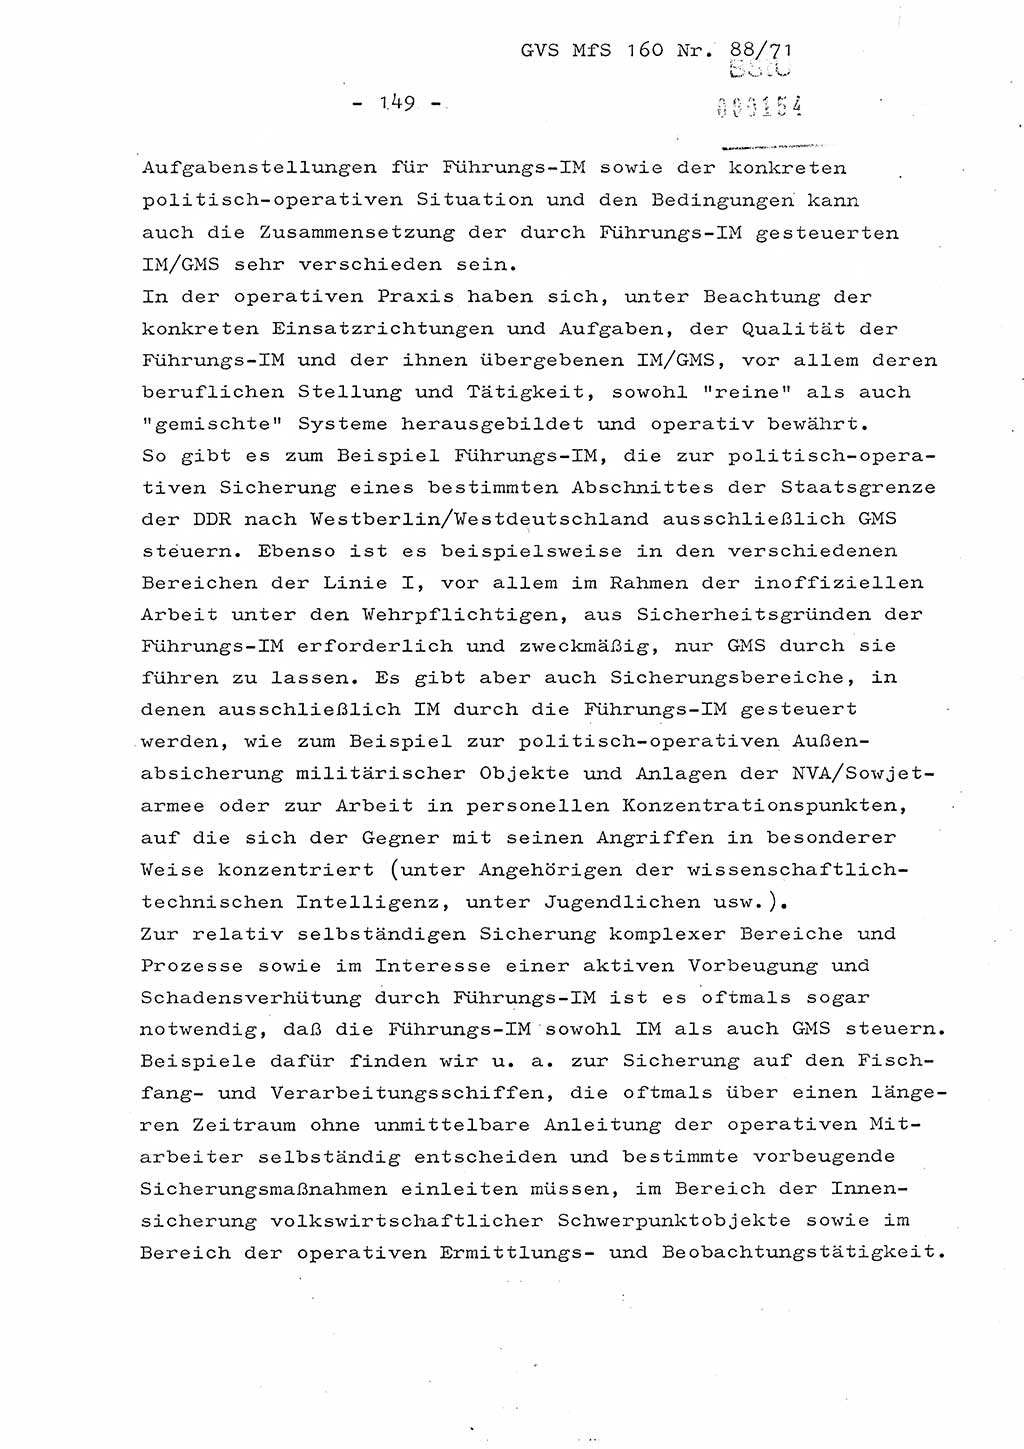 Dissertation Oberstleutnant Josef Schwarz (BV Schwerin), Major Fritz Amm (JHS), Hauptmann Peter Gräßler (JHS), Ministerium für Staatssicherheit (MfS) [Deutsche Demokratische Republik (DDR)], Juristische Hochschule (JHS), Geheime Verschlußsache (GVS) 160-88/71, Potsdam 1972, Seite 149 (Diss. MfS DDR JHS GVS 160-88/71 1972, S. 149)